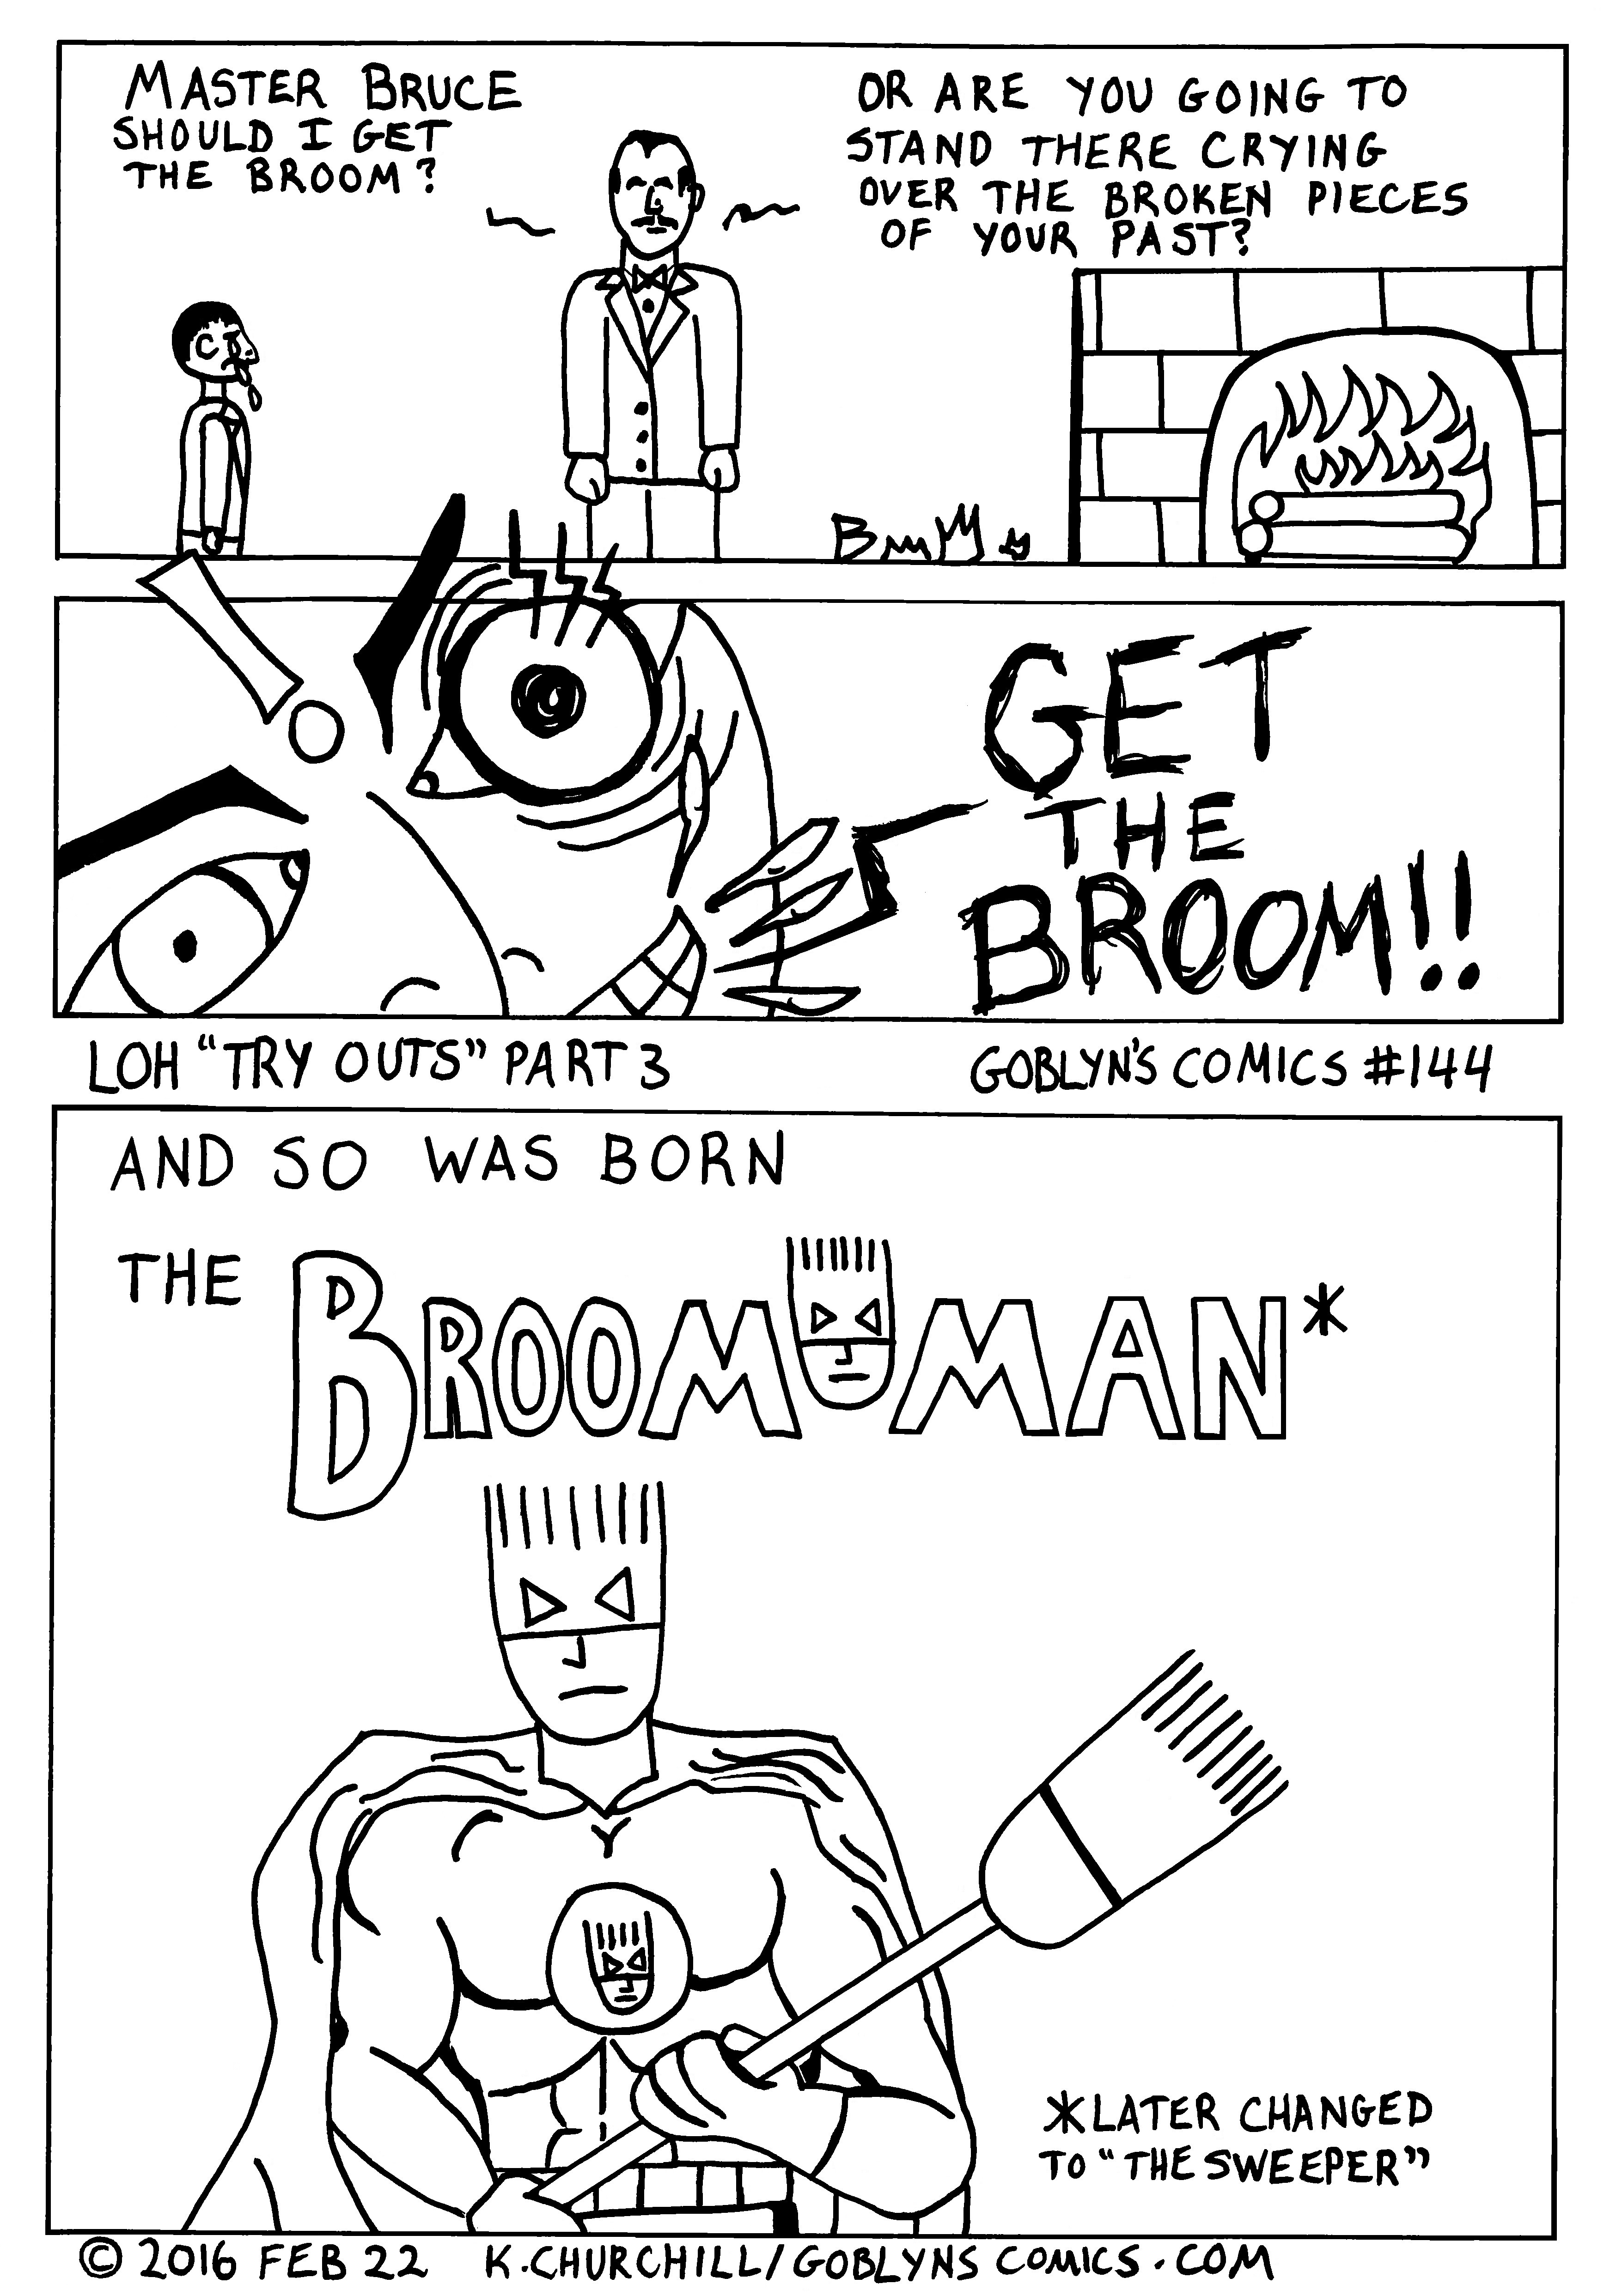 Broom-Man aka The Sweeper!